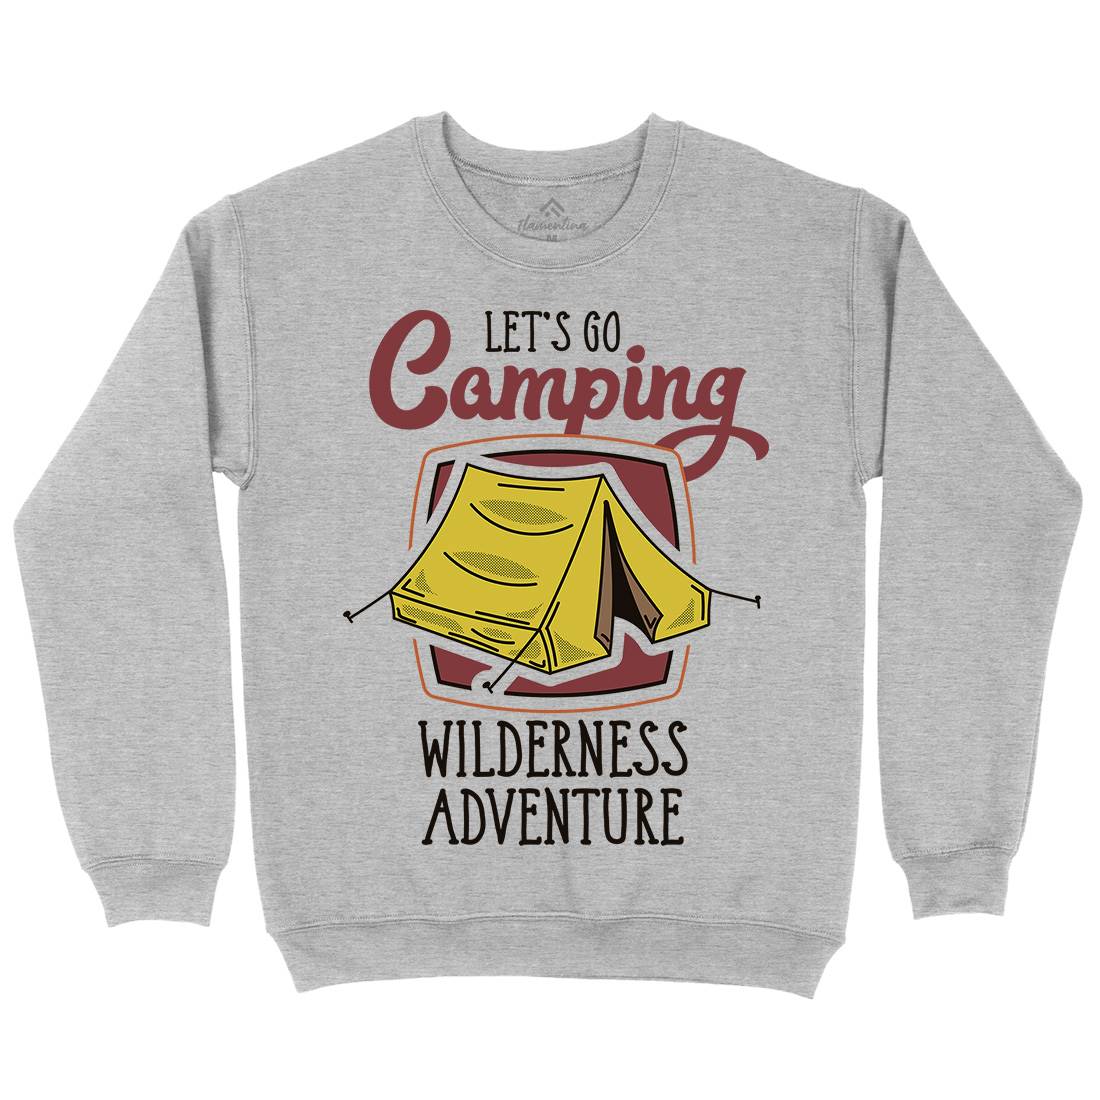 Wilderness Adventure Kids Crew Neck Sweatshirt Nature D998